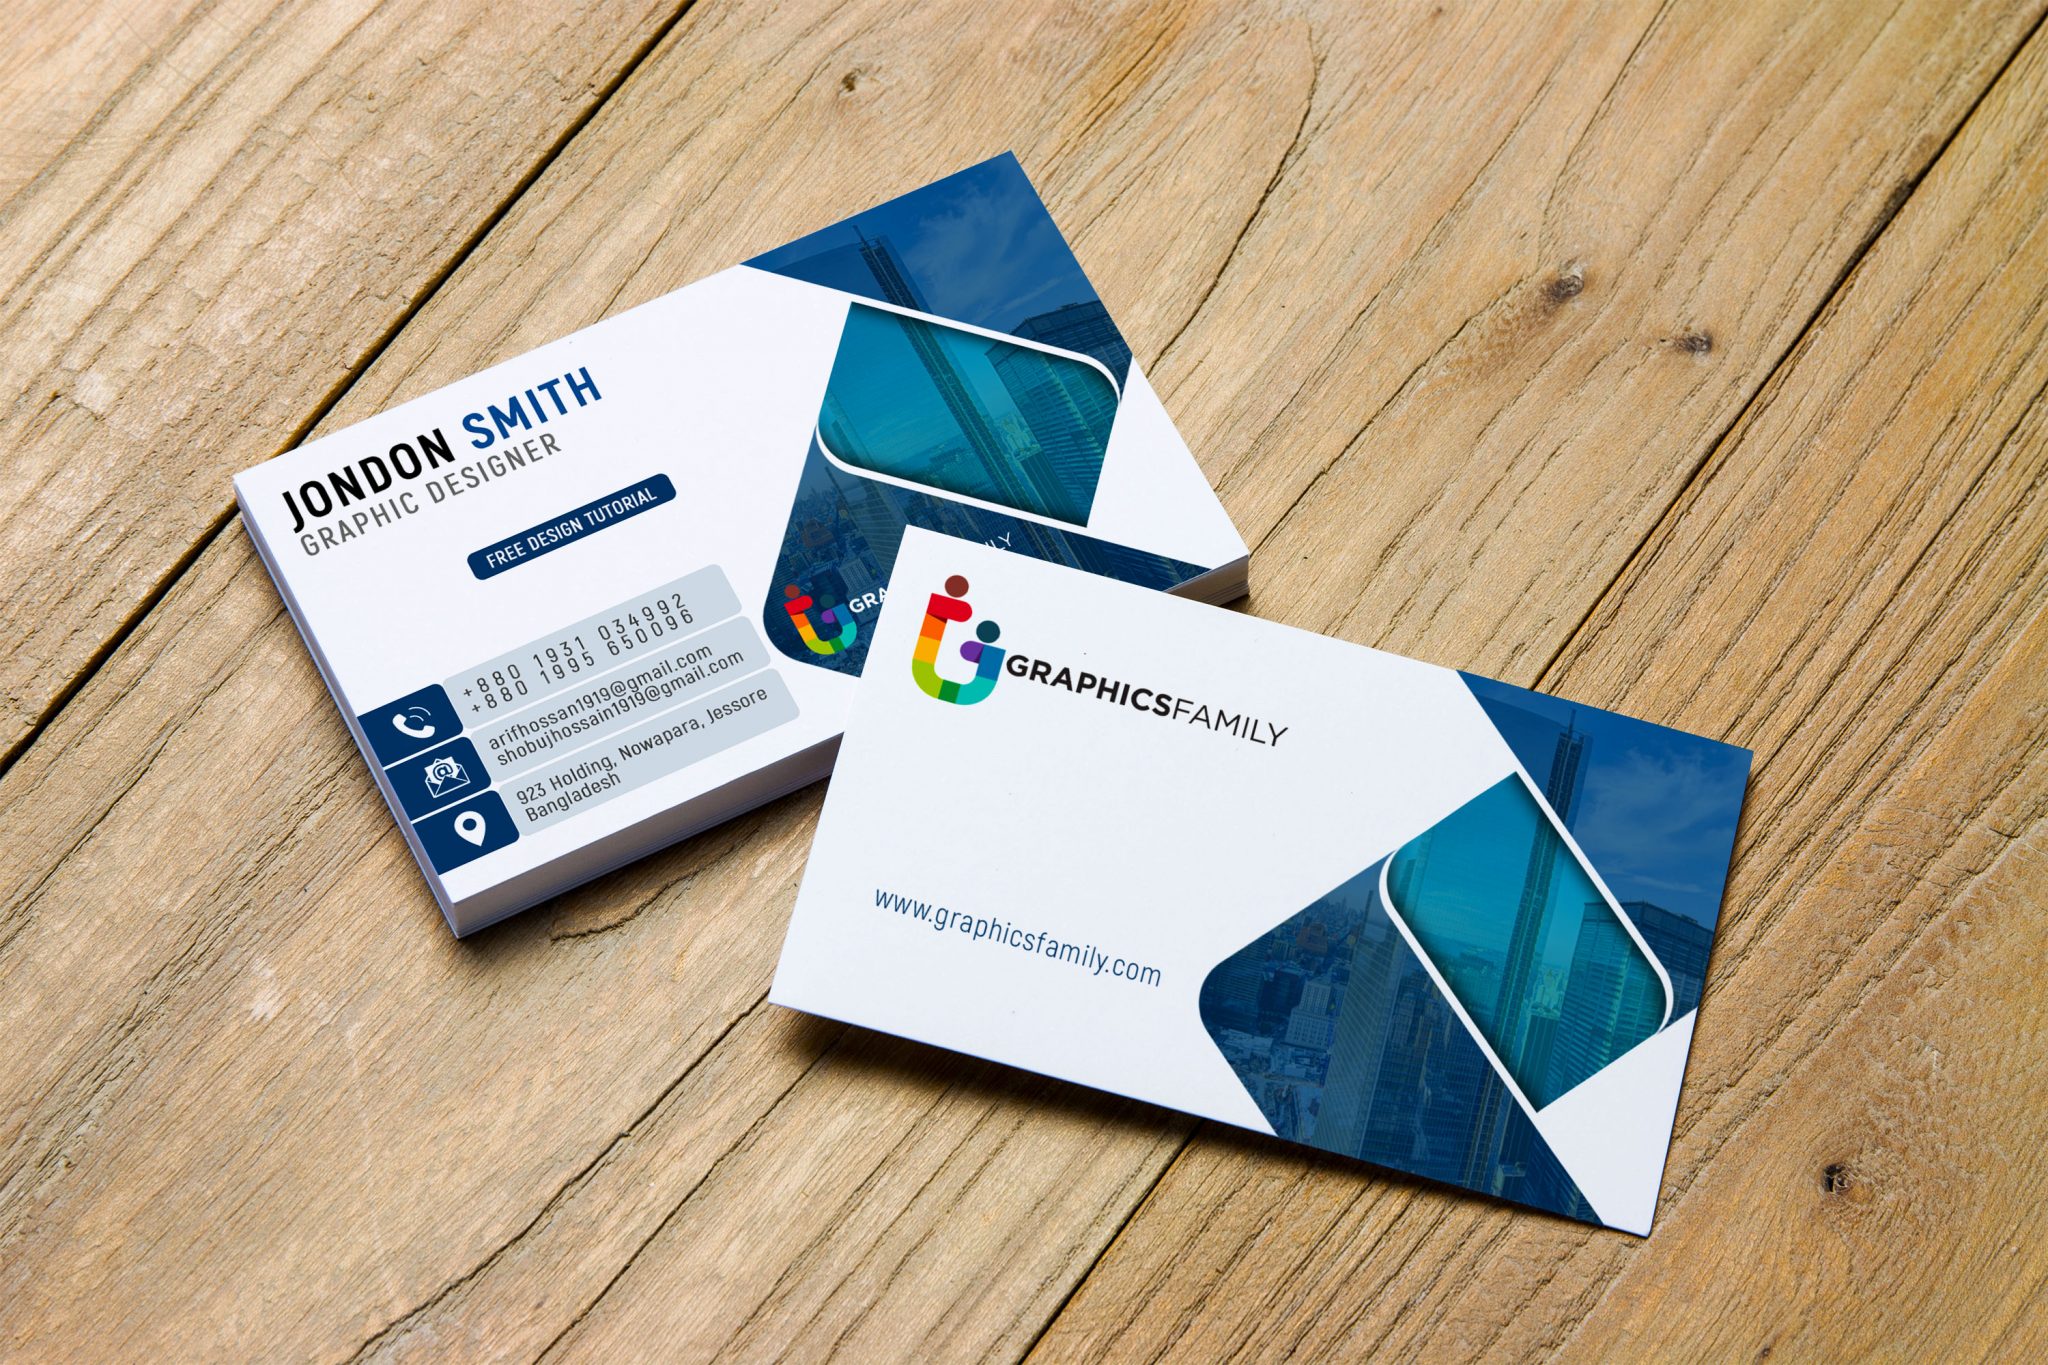 Design business cards online